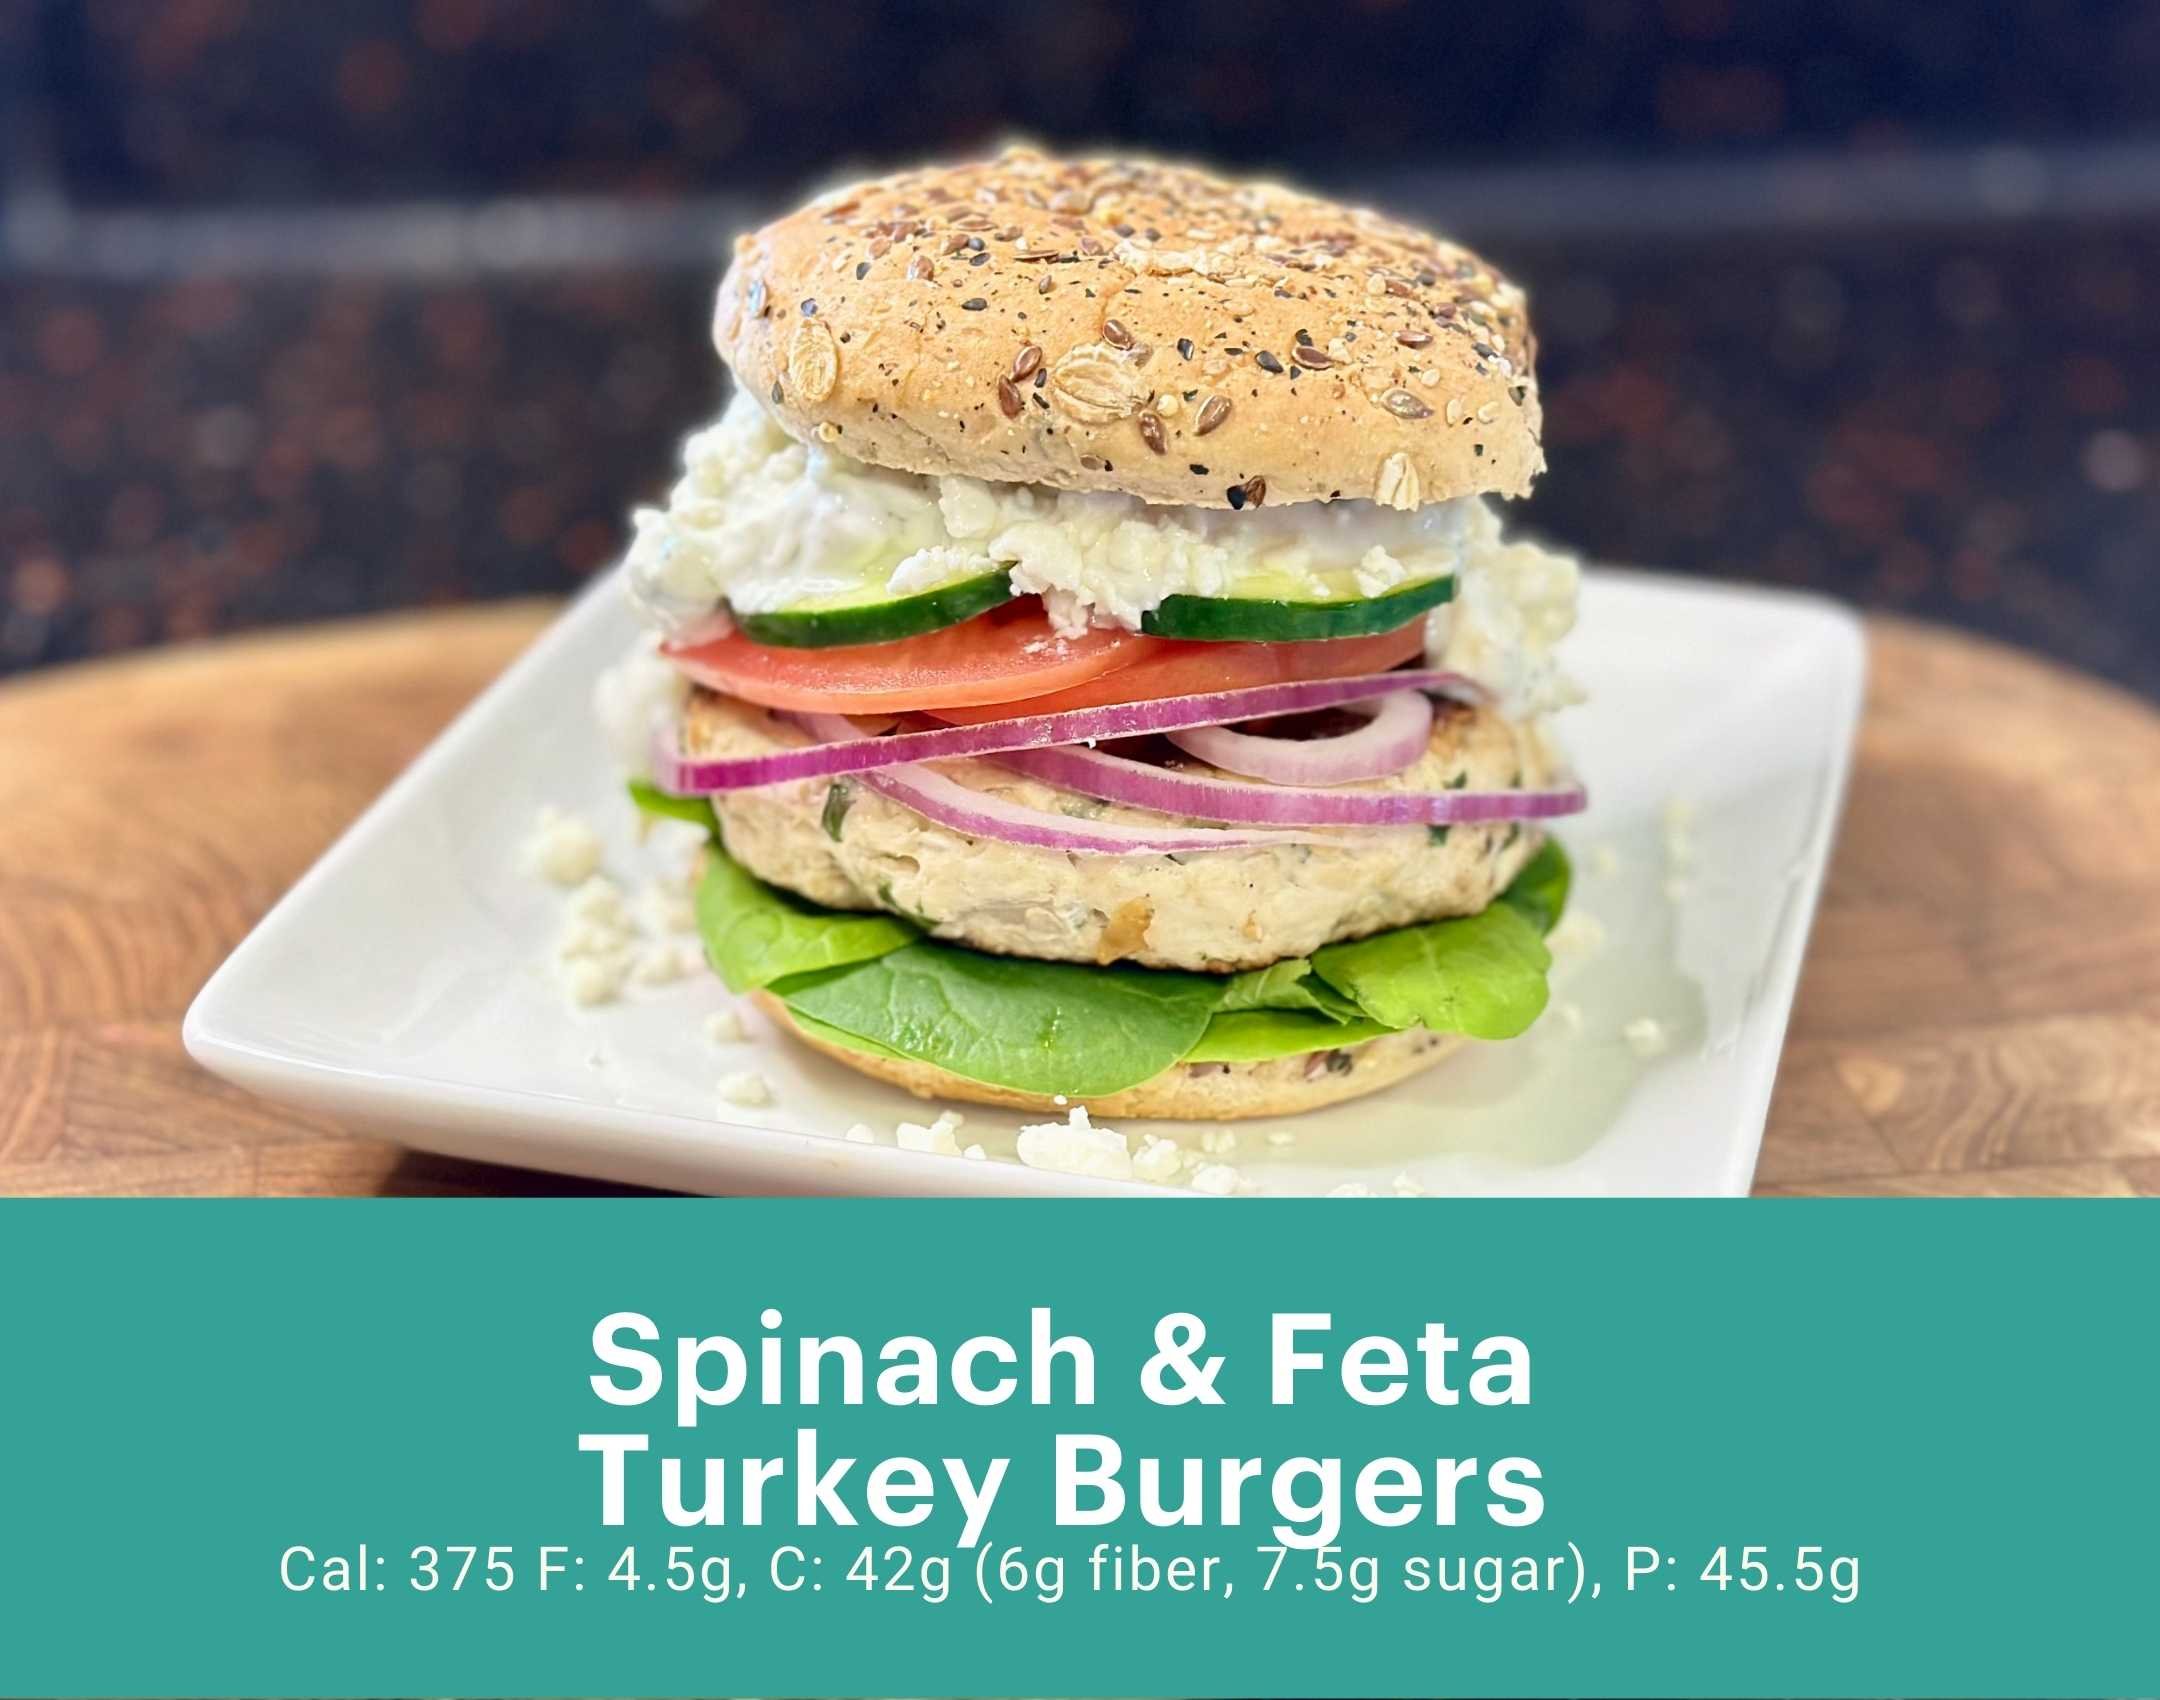 Spinach & Feta Turkey Burgers.jpg